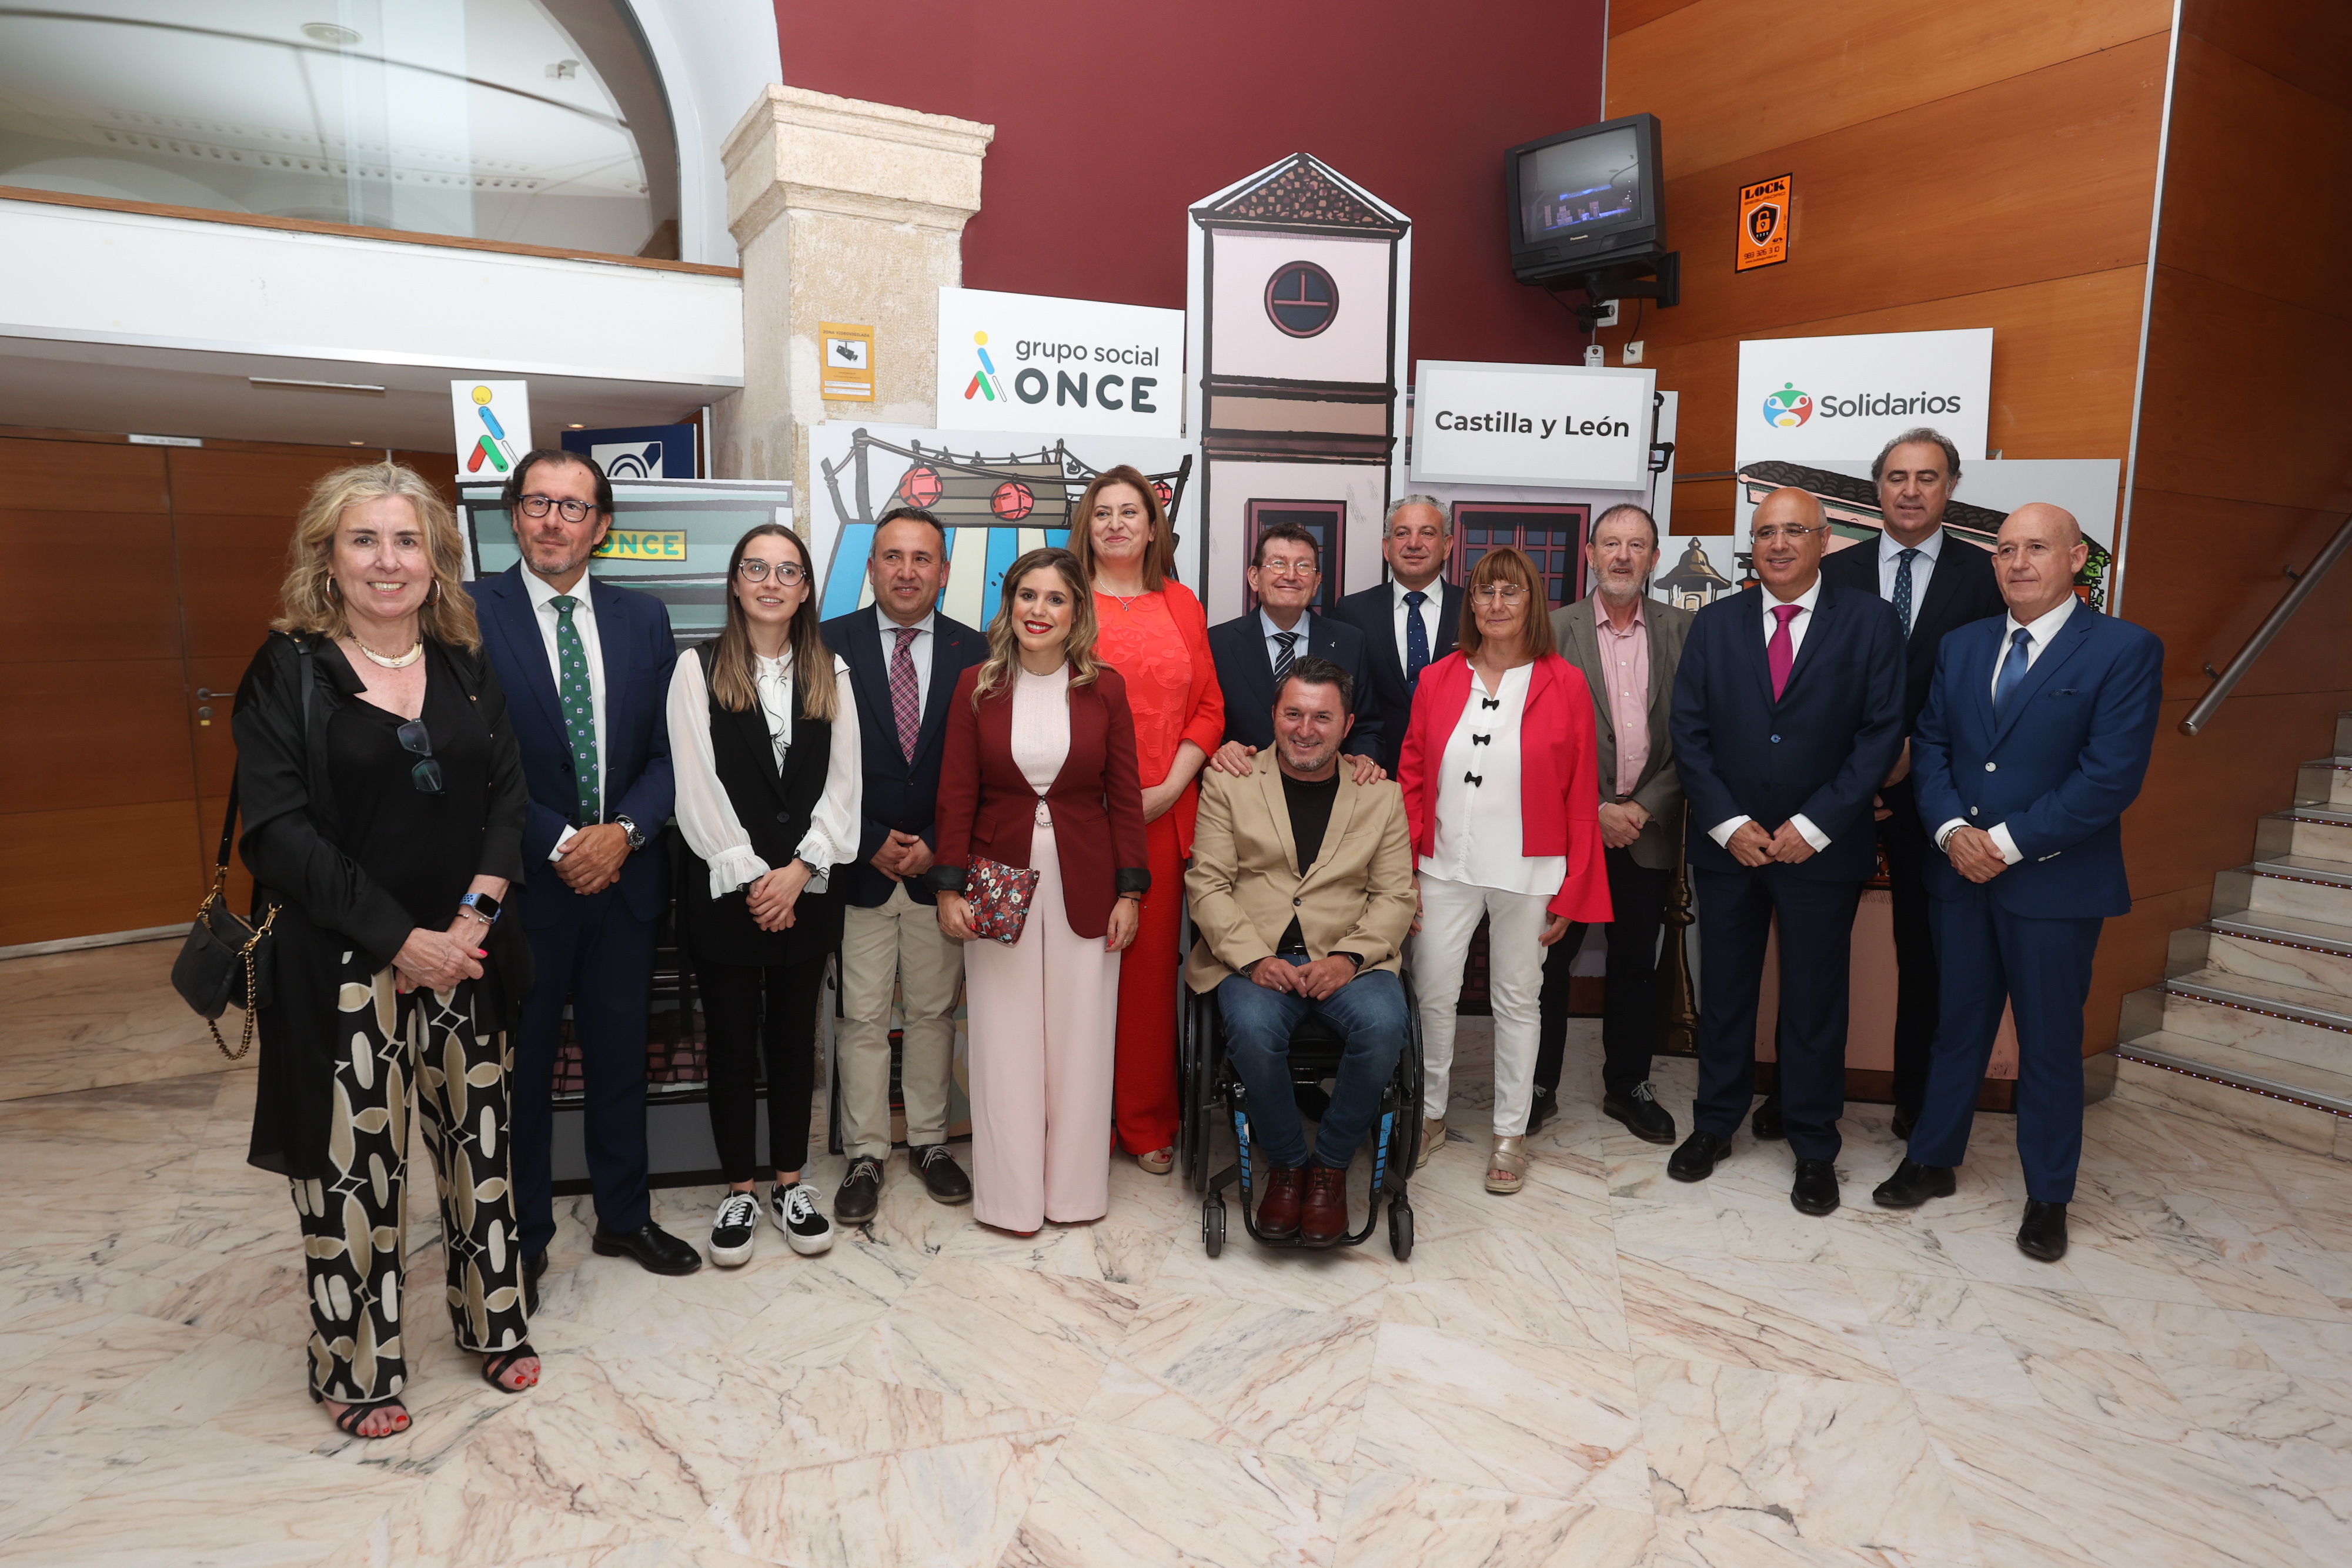 Premiados con los Solidarios Grupo Social ONCE Castilla y León, junto a las autoridades y responsables ONCE